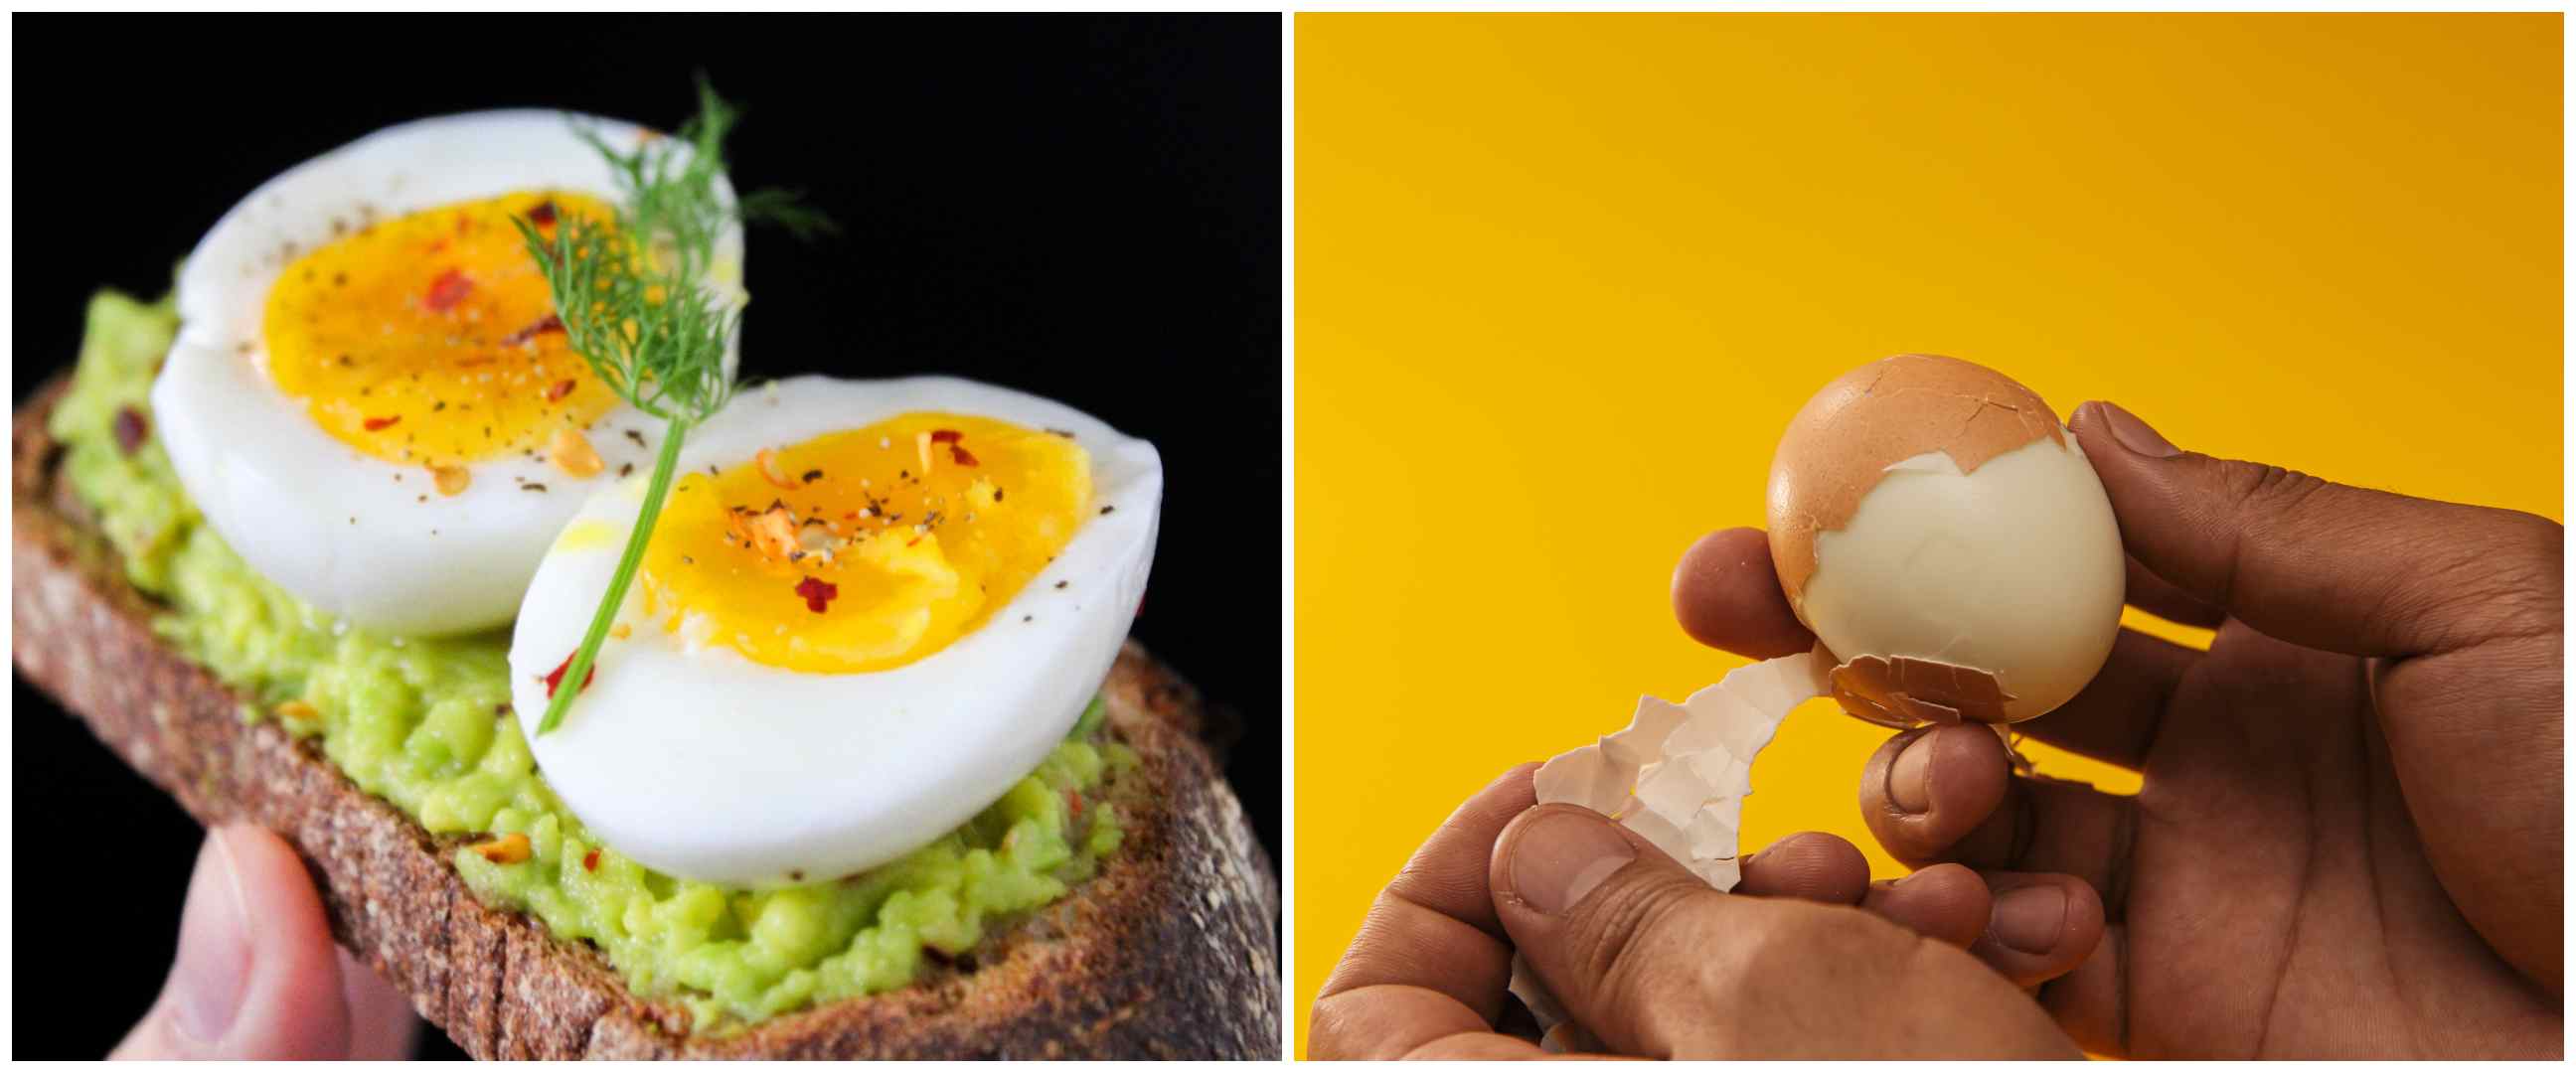 9 Manfaat telur rebus untuk kesehatan, bisa cegah penyakit jantung